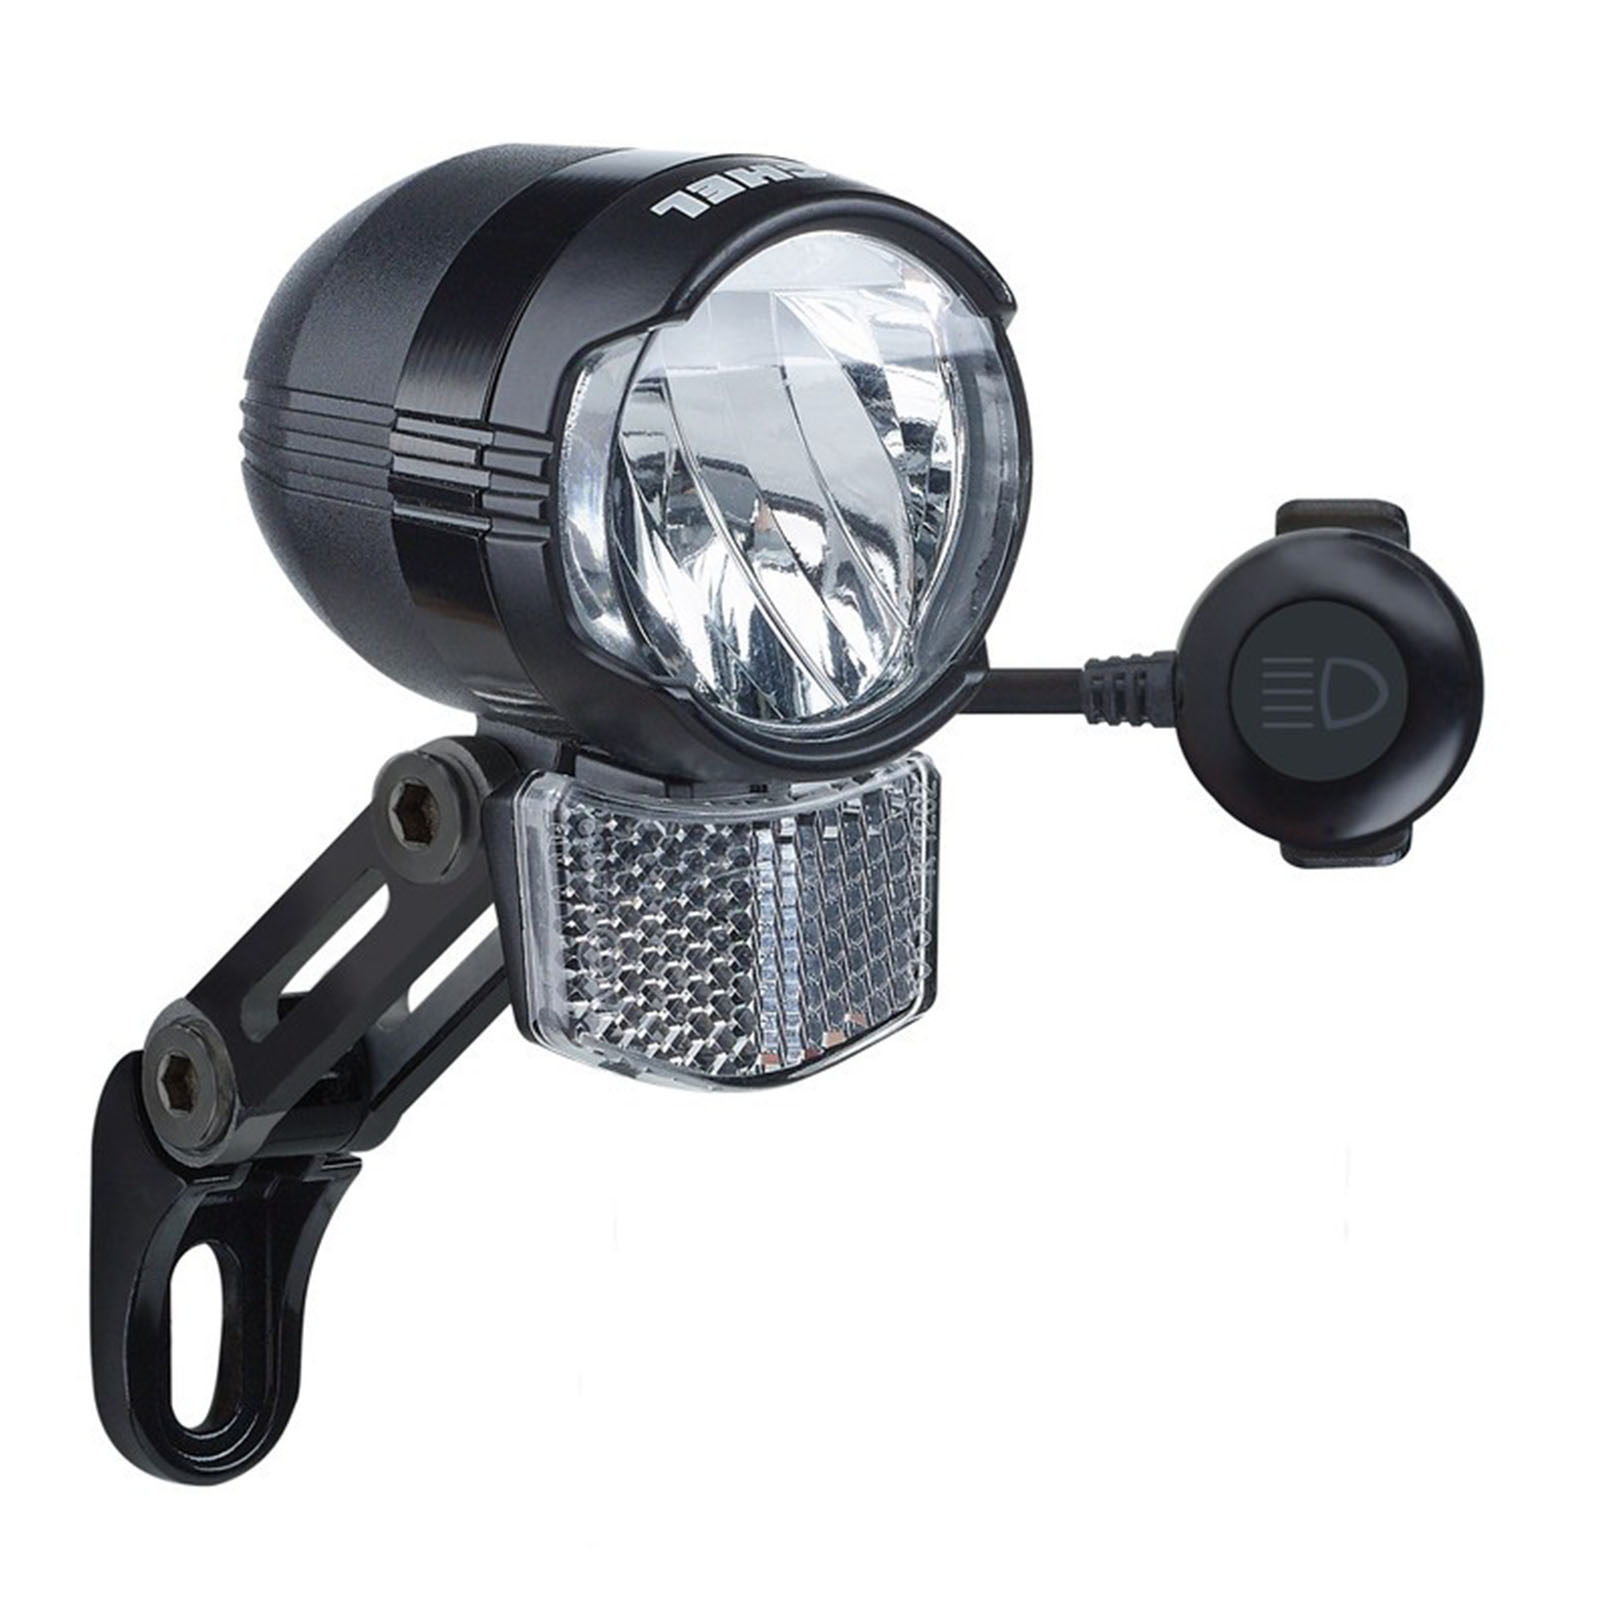 Büchel E-BIKE LED Scheinwerfer 60 Lux Shiny FL mit Fernlicht 100-Lux